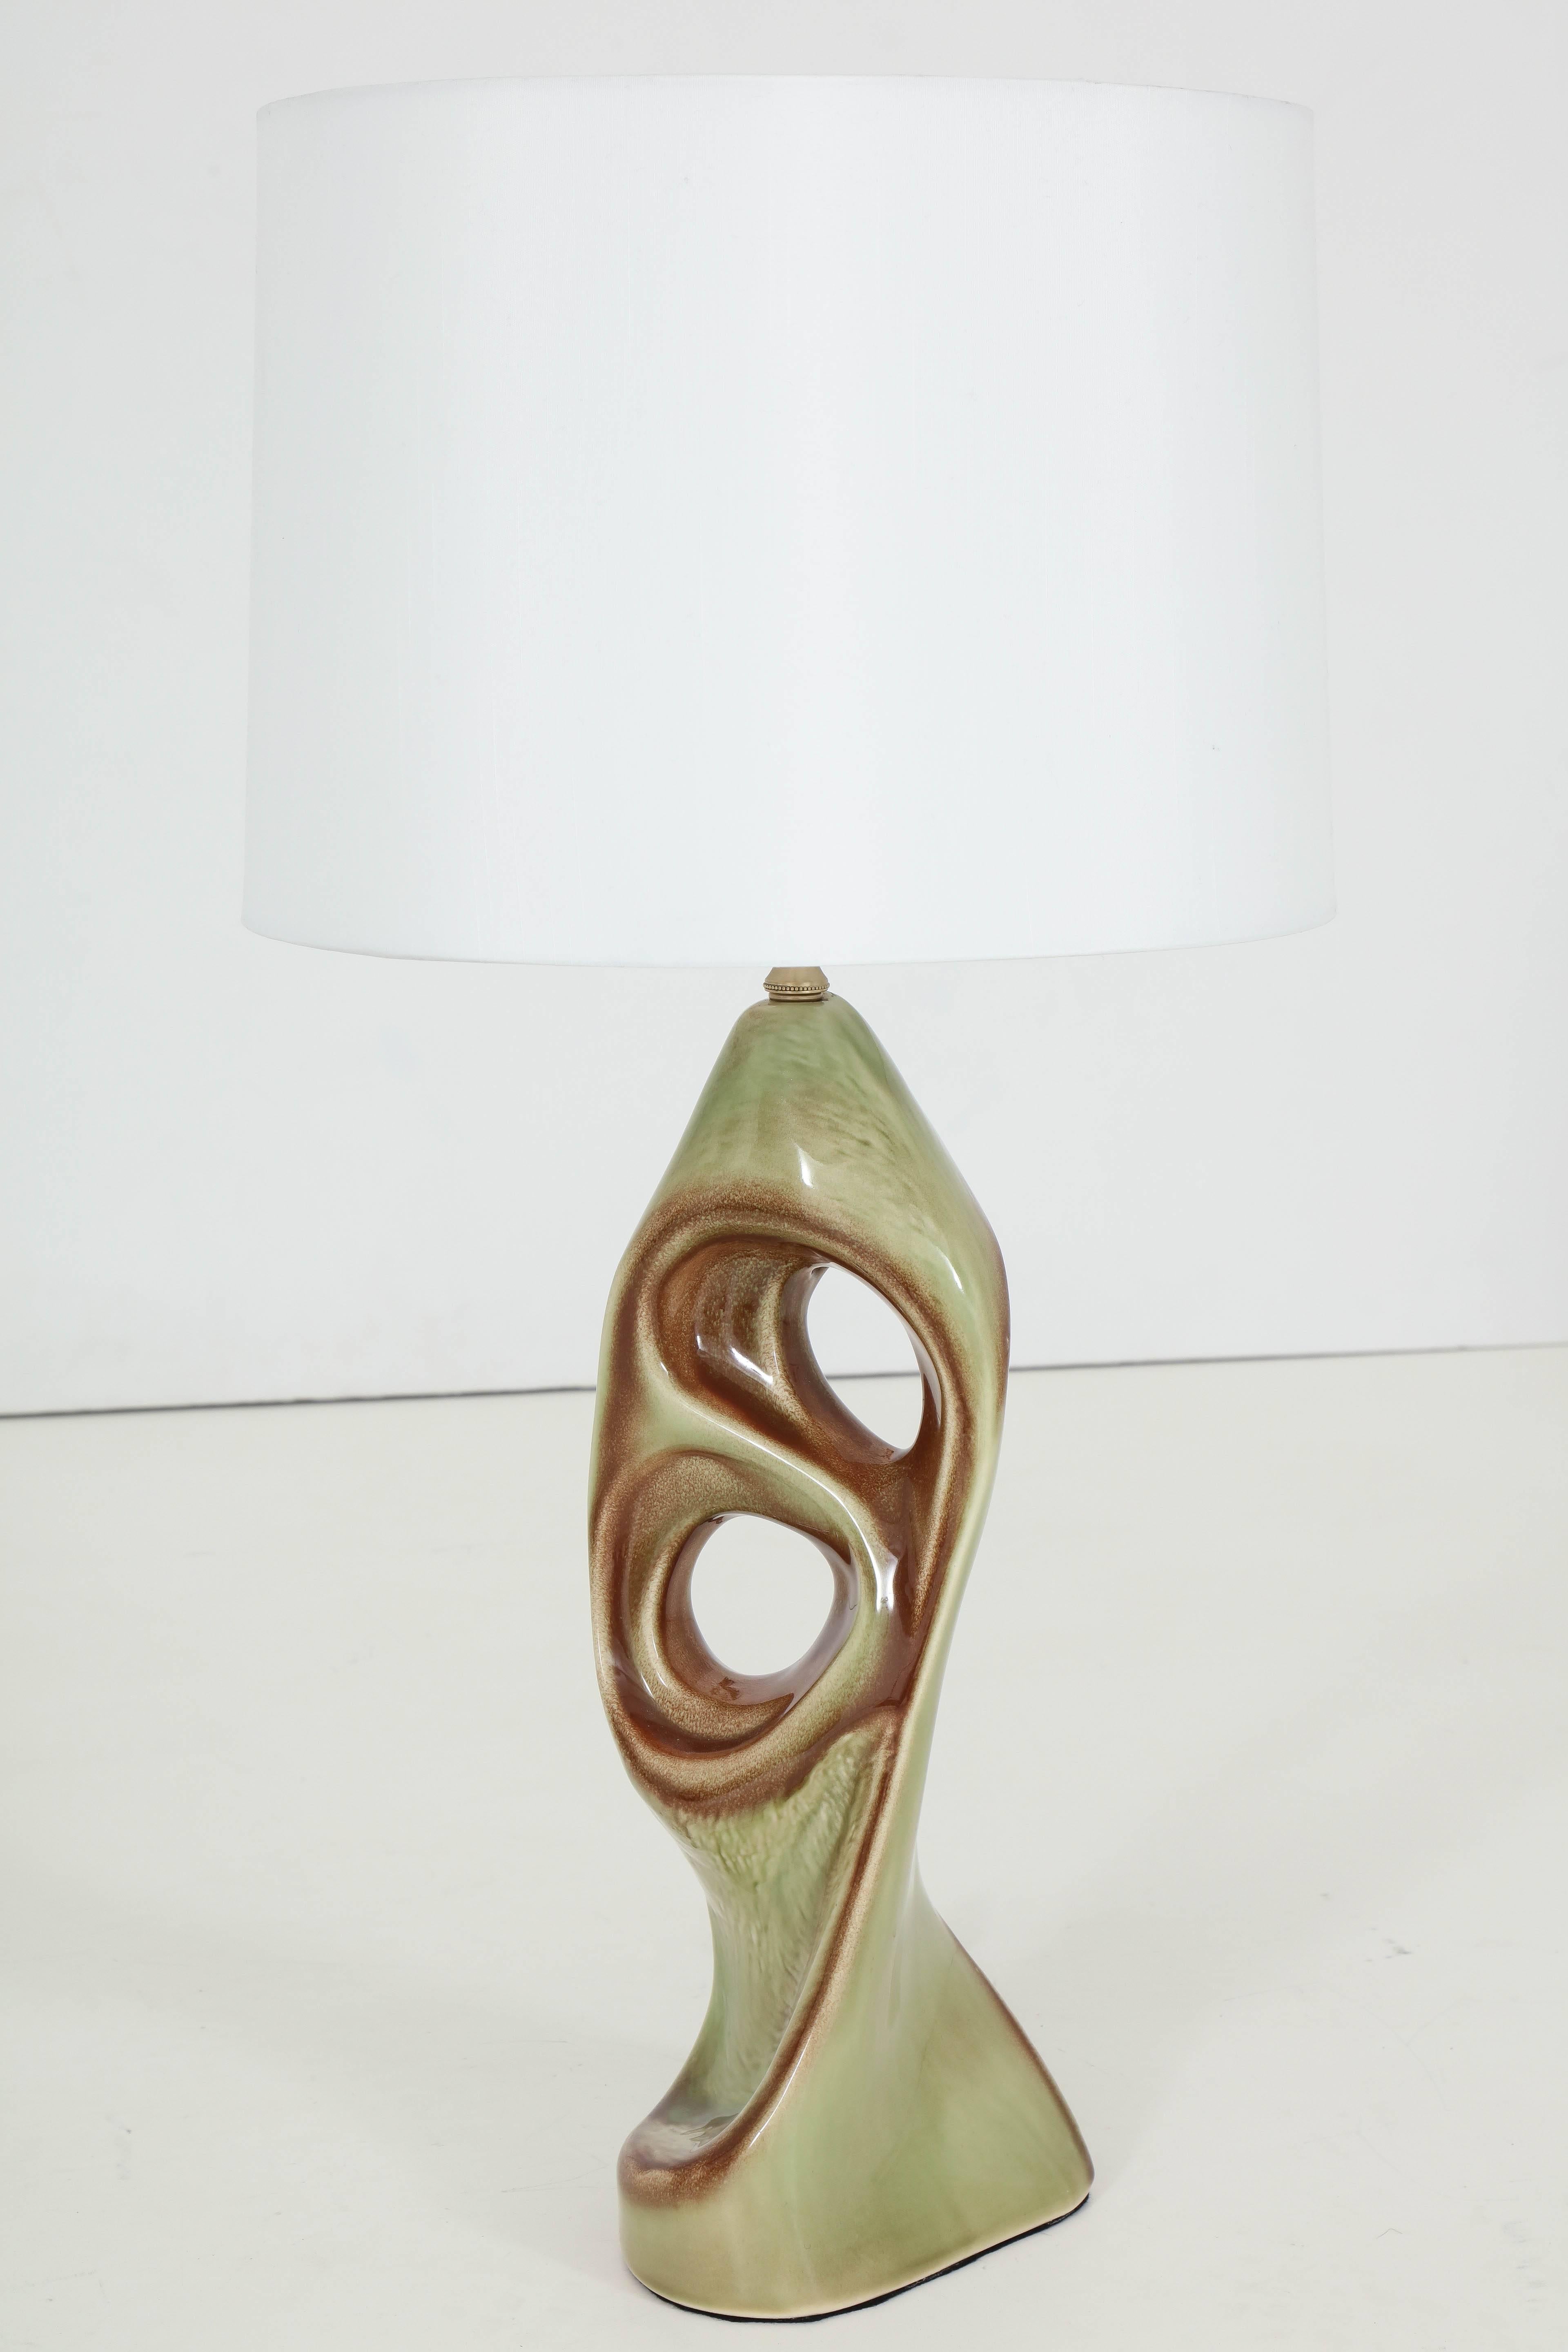 West German Ceramic Lamps, Style of Marianna von Allesch 1